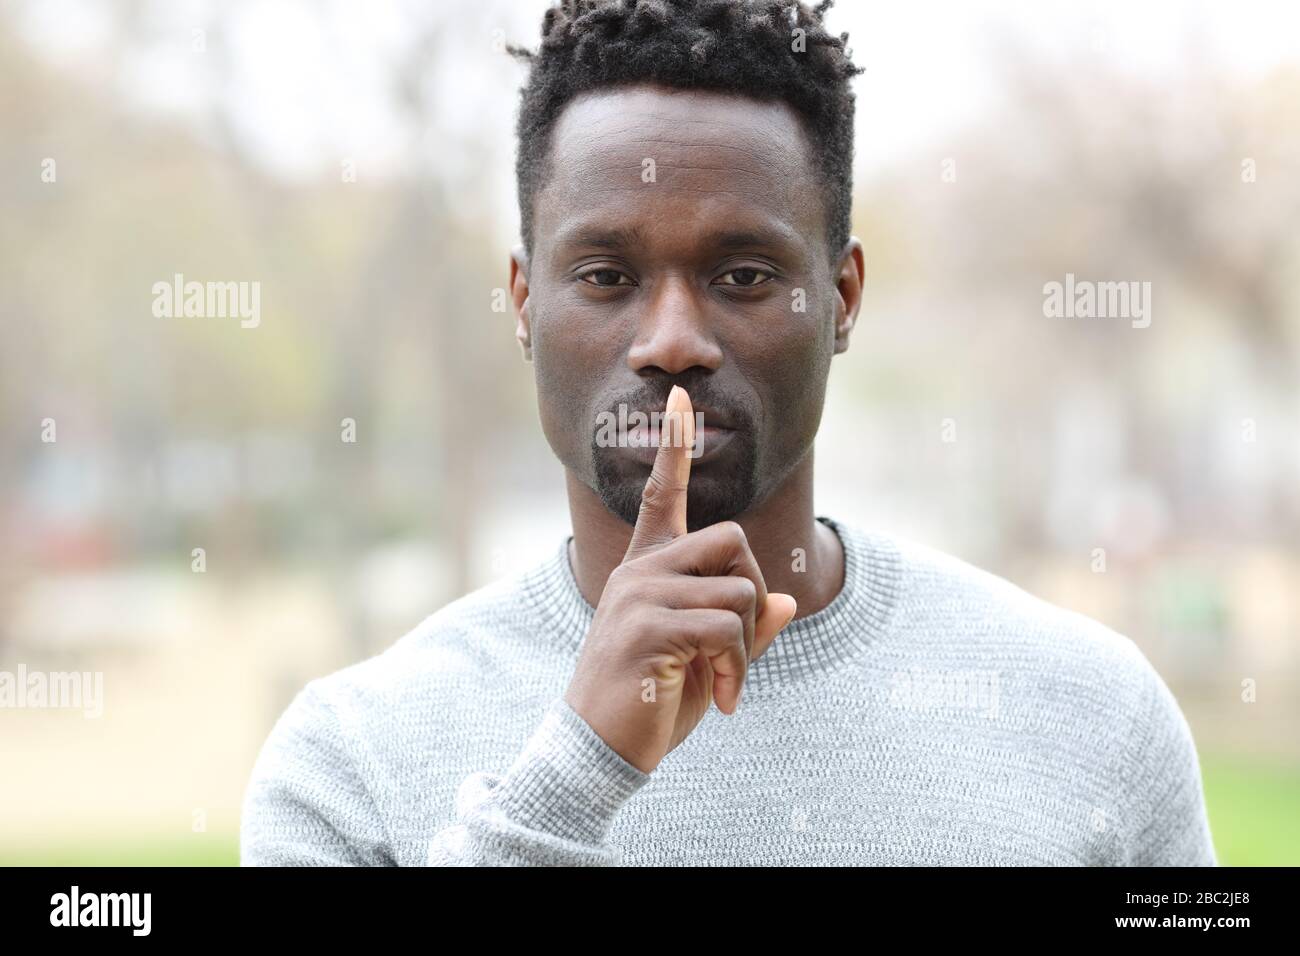 Vue avant portrait d'un homme noir demandant le silence avec le doigt sur les lèvres debout dans un parc Banque D'Images